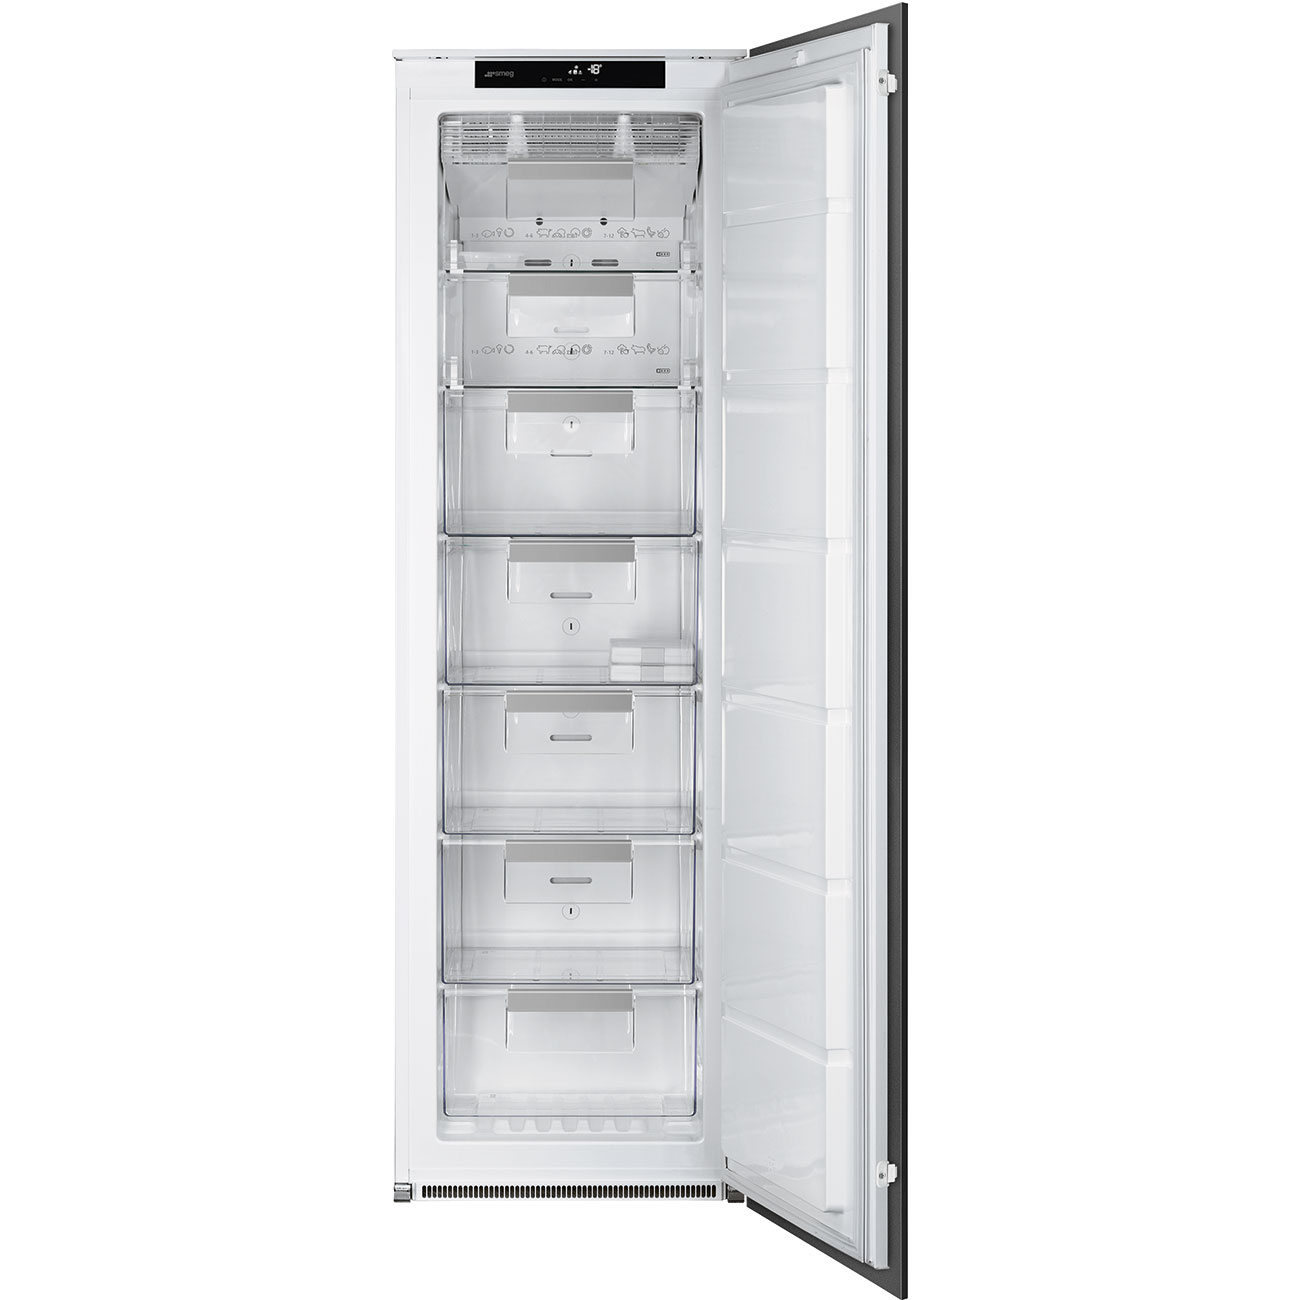 Single door Built-in freezer- Smeg_1